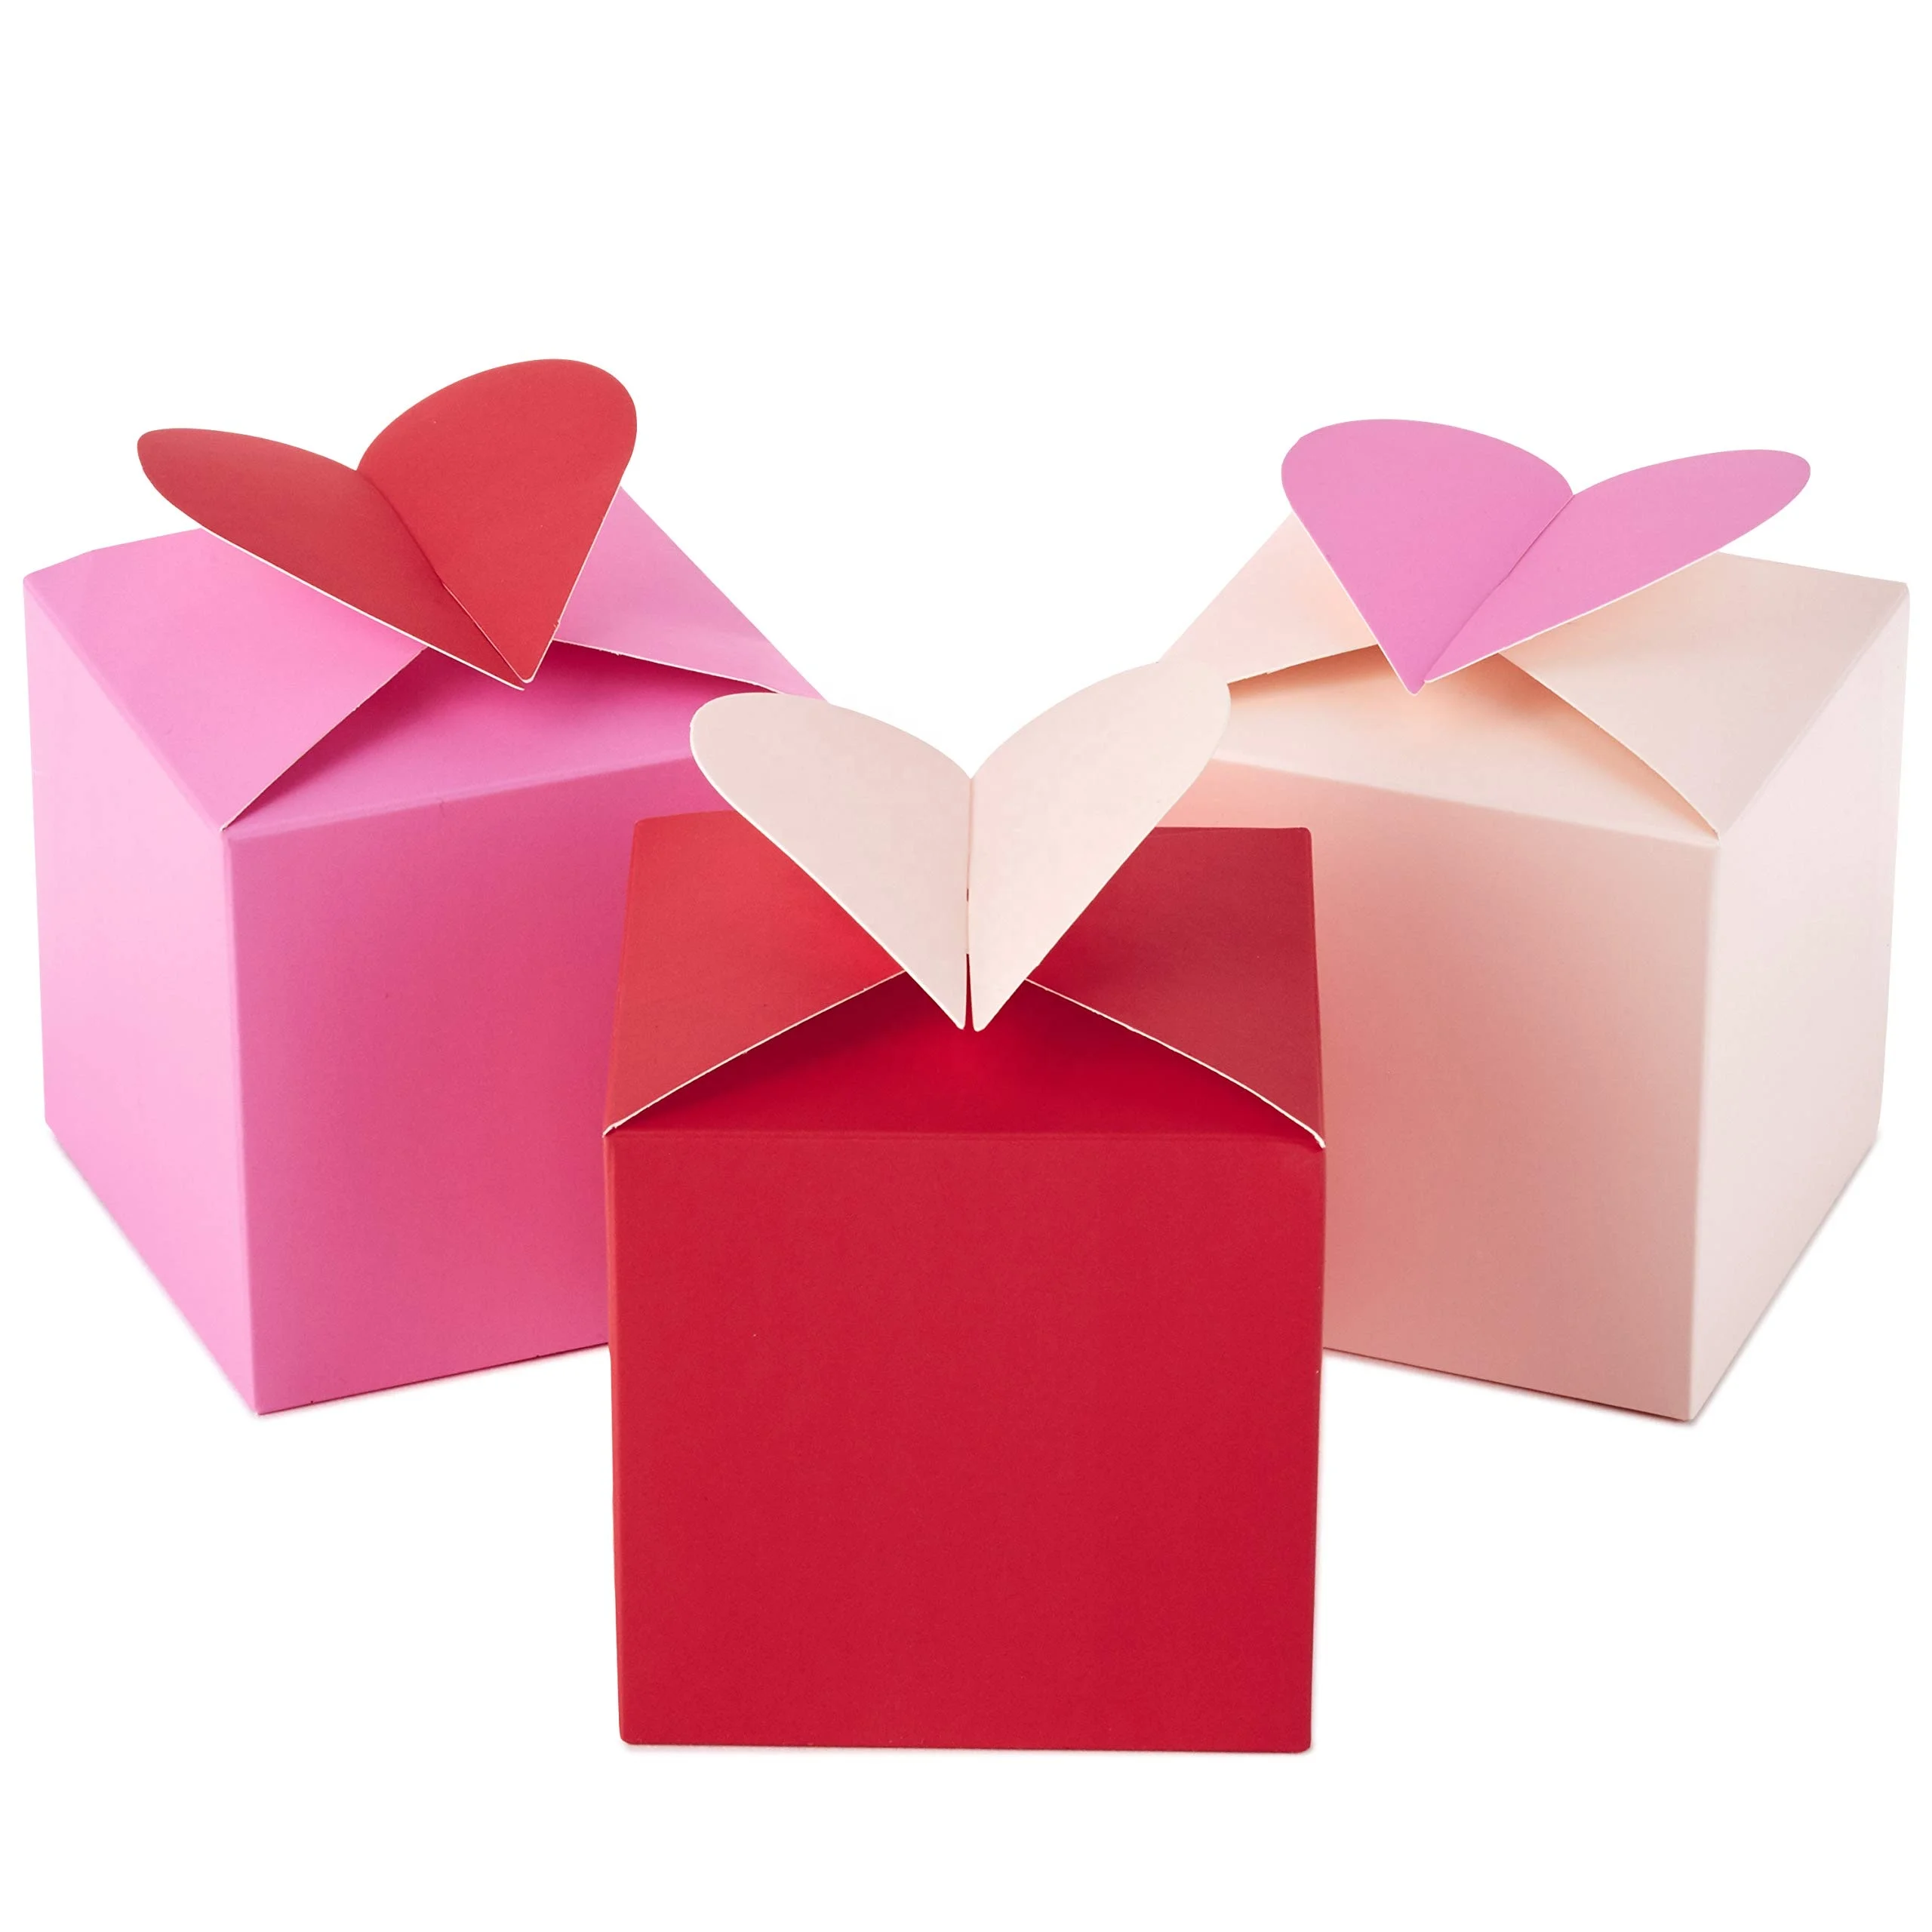 Hộp quà tặng Valentine hàng đầu với những món quà độc đáo và tuyệt vời sẽ làm cho buổi Valentine của bạn thêm lãng mạn và đặc biệt hơn bao giờ hết. Với sự linh hoạt và sự tinh tế, hộp quà tặng này chắc chắn sẽ khiến bất kỳ ai đều cảm thấy ngạc nhiên và hạnh phúc khi nhận được nó.